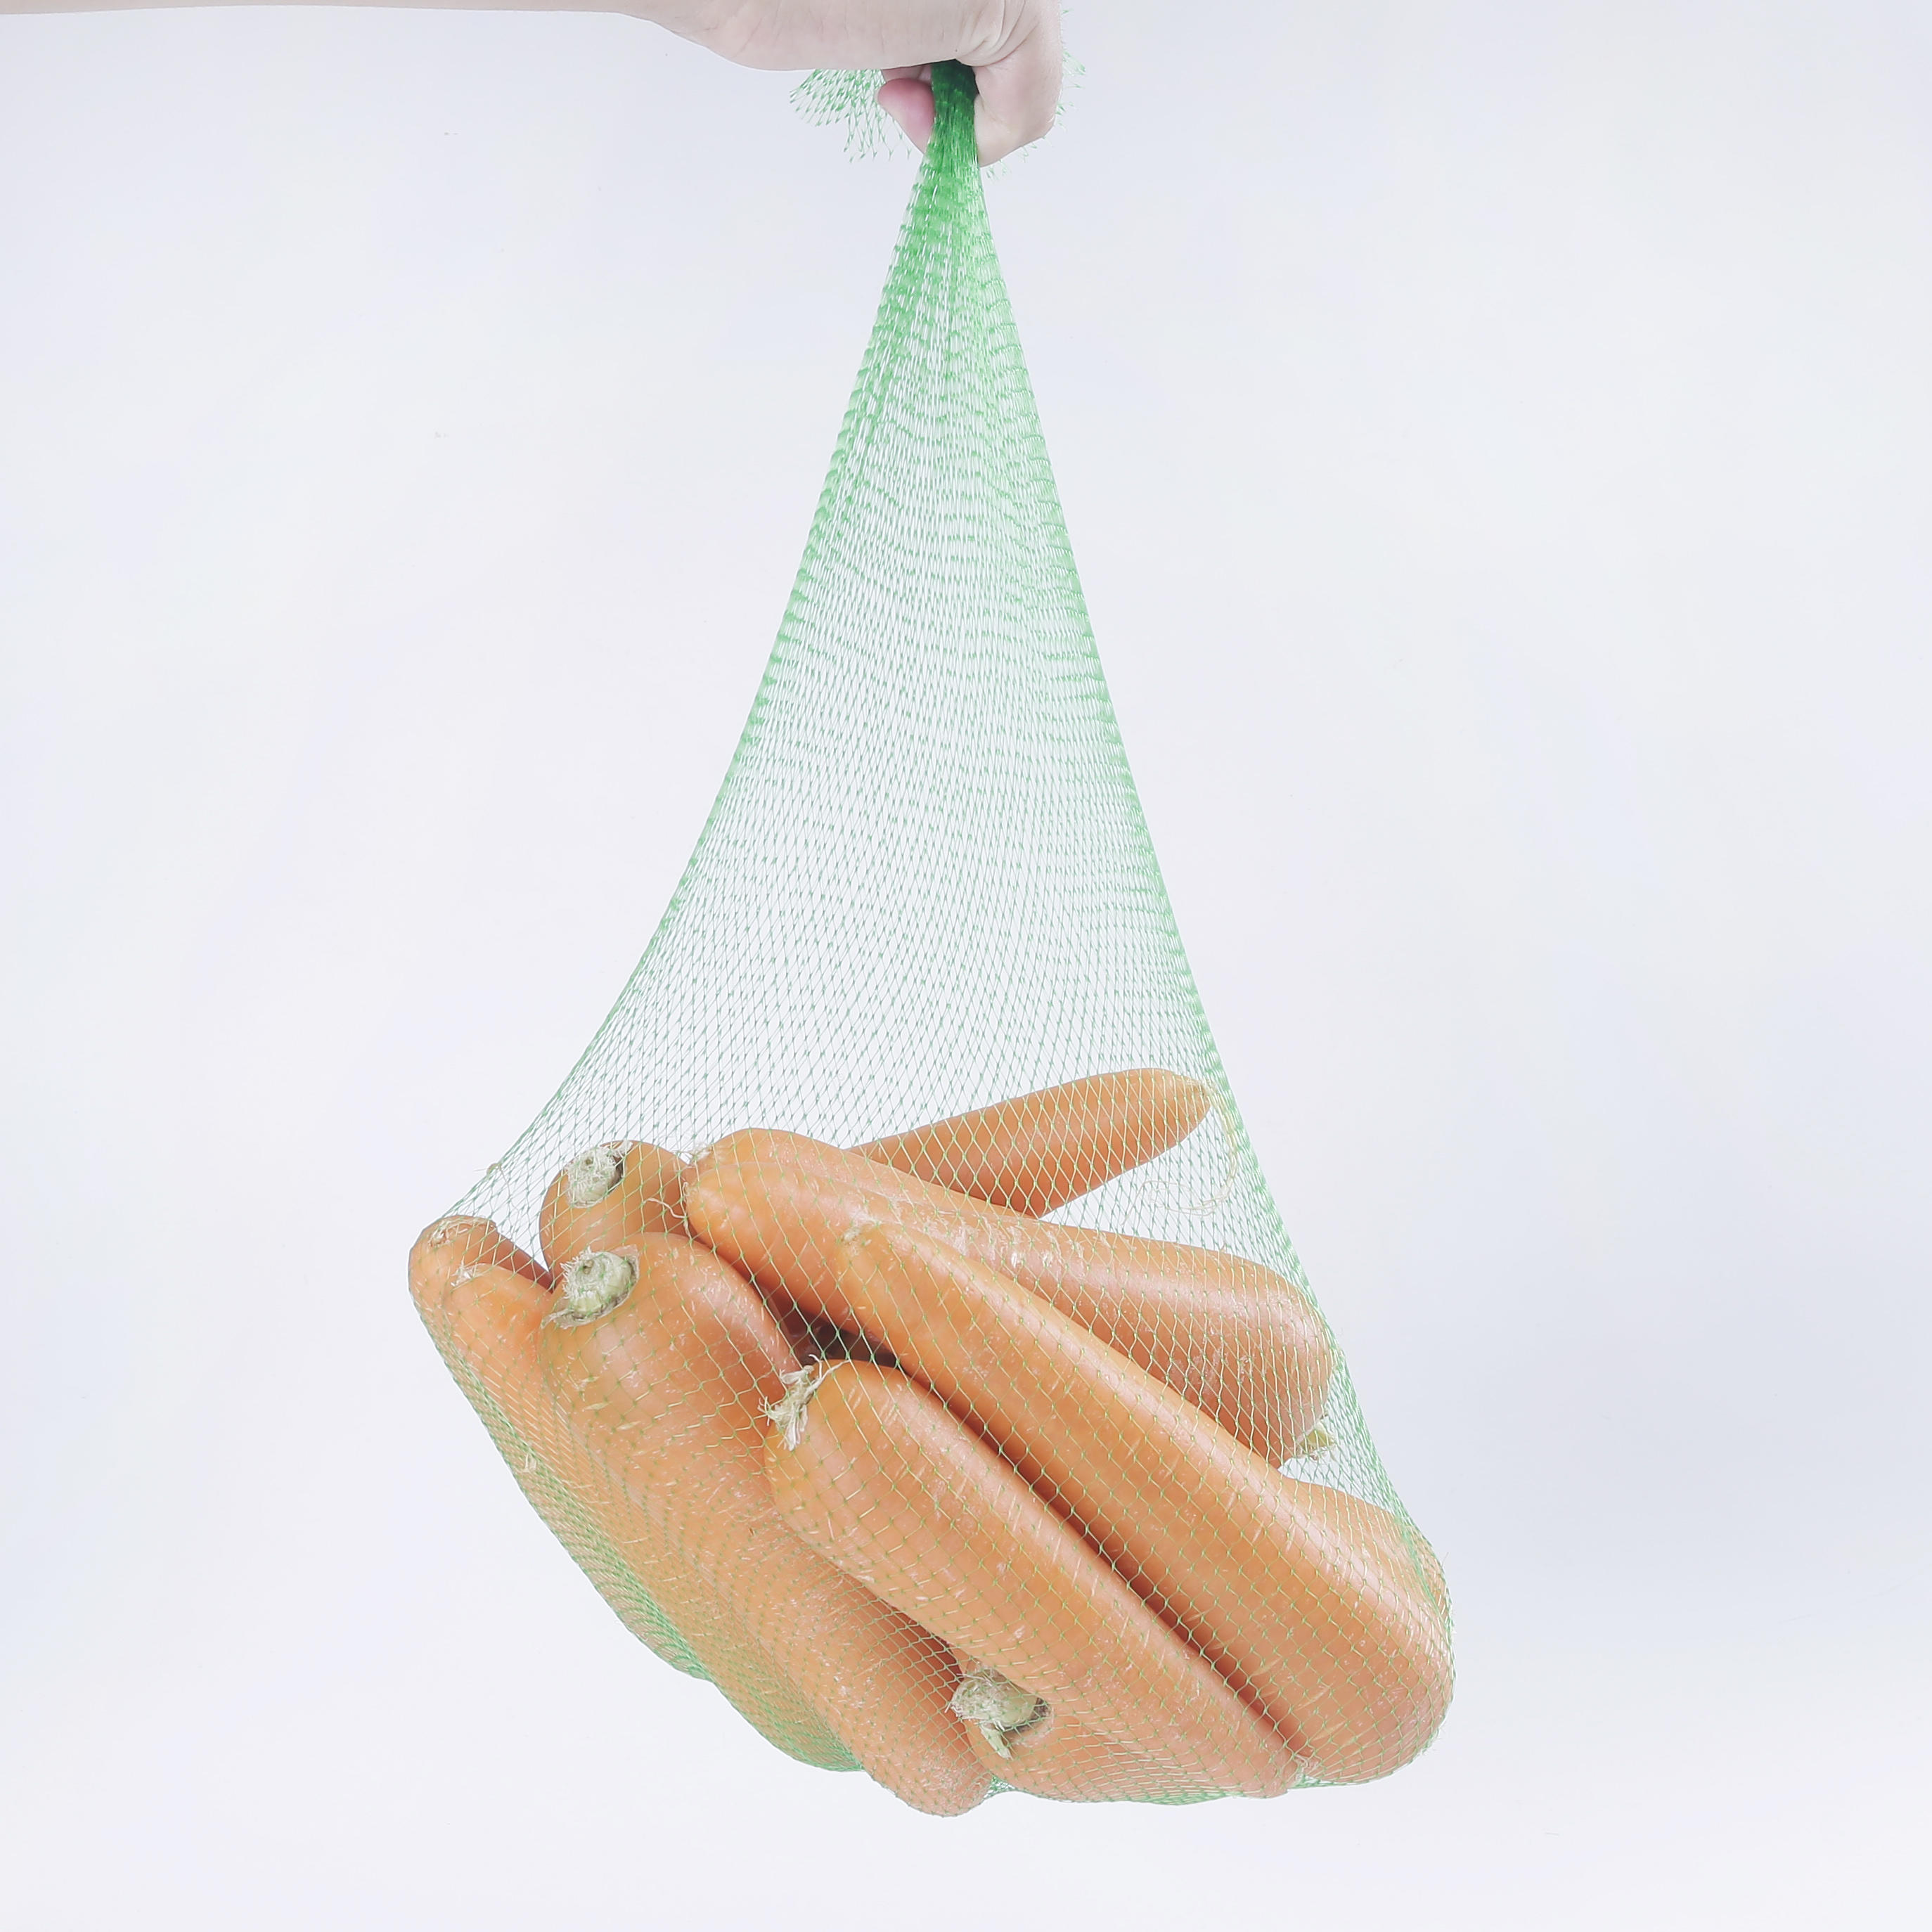 PP Plastic Tubular Mesh Bag Fruit Packing Net Bag Plastic Protective Mesh Sleeve Net